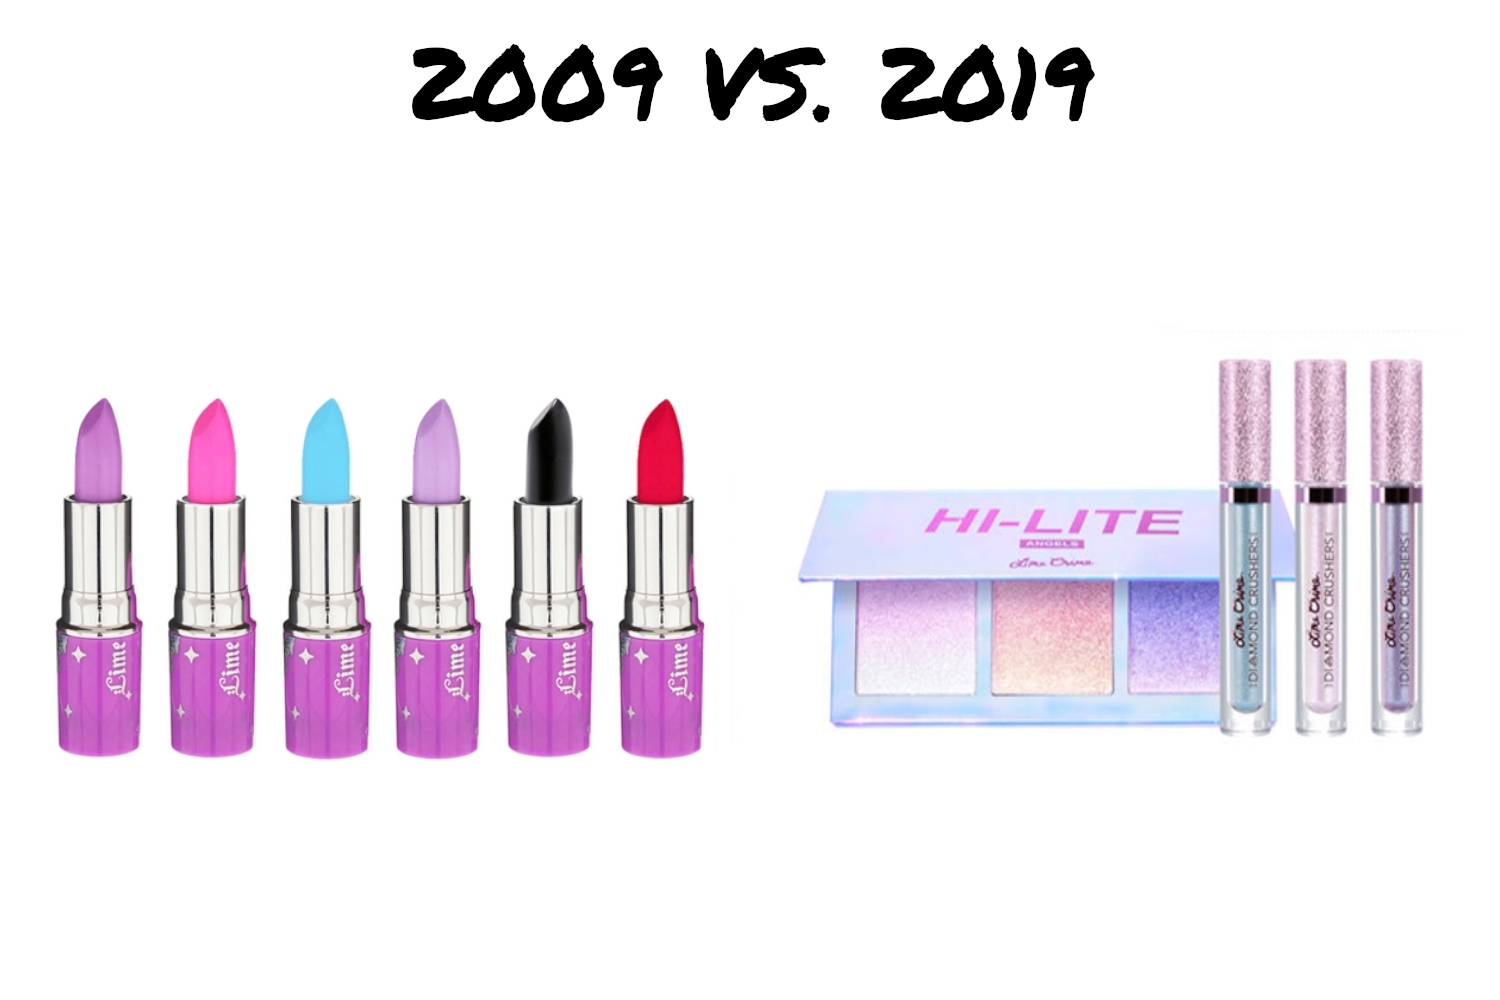 ten years challenge makeup industry then and now 2009 versus 2019 year